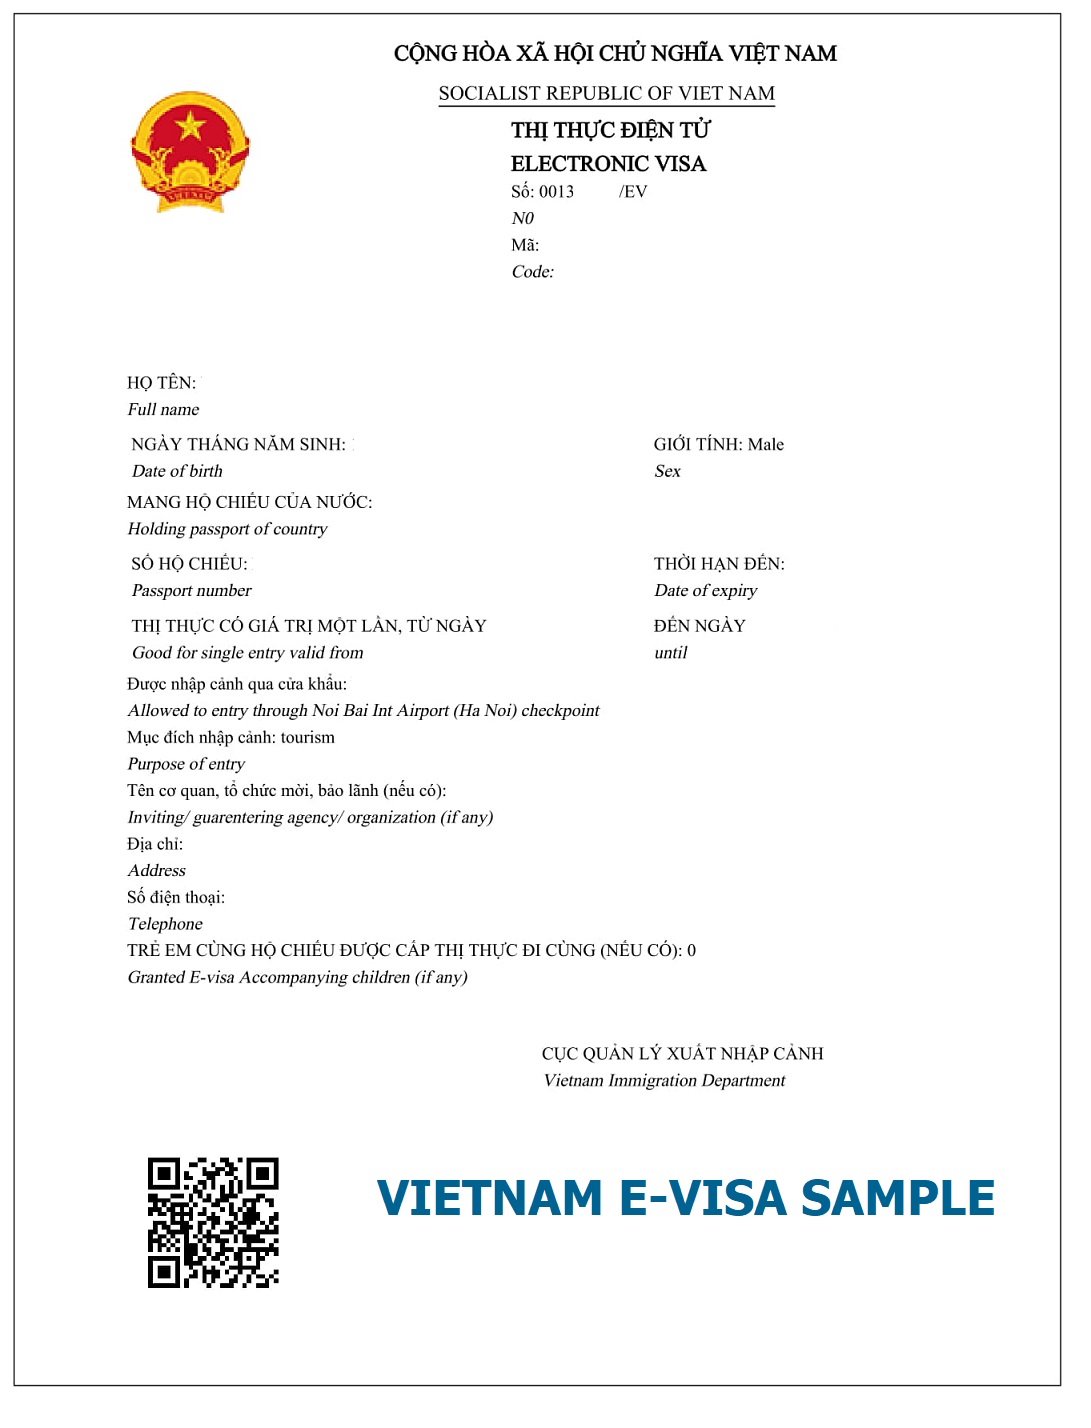 e-visa-vietnam